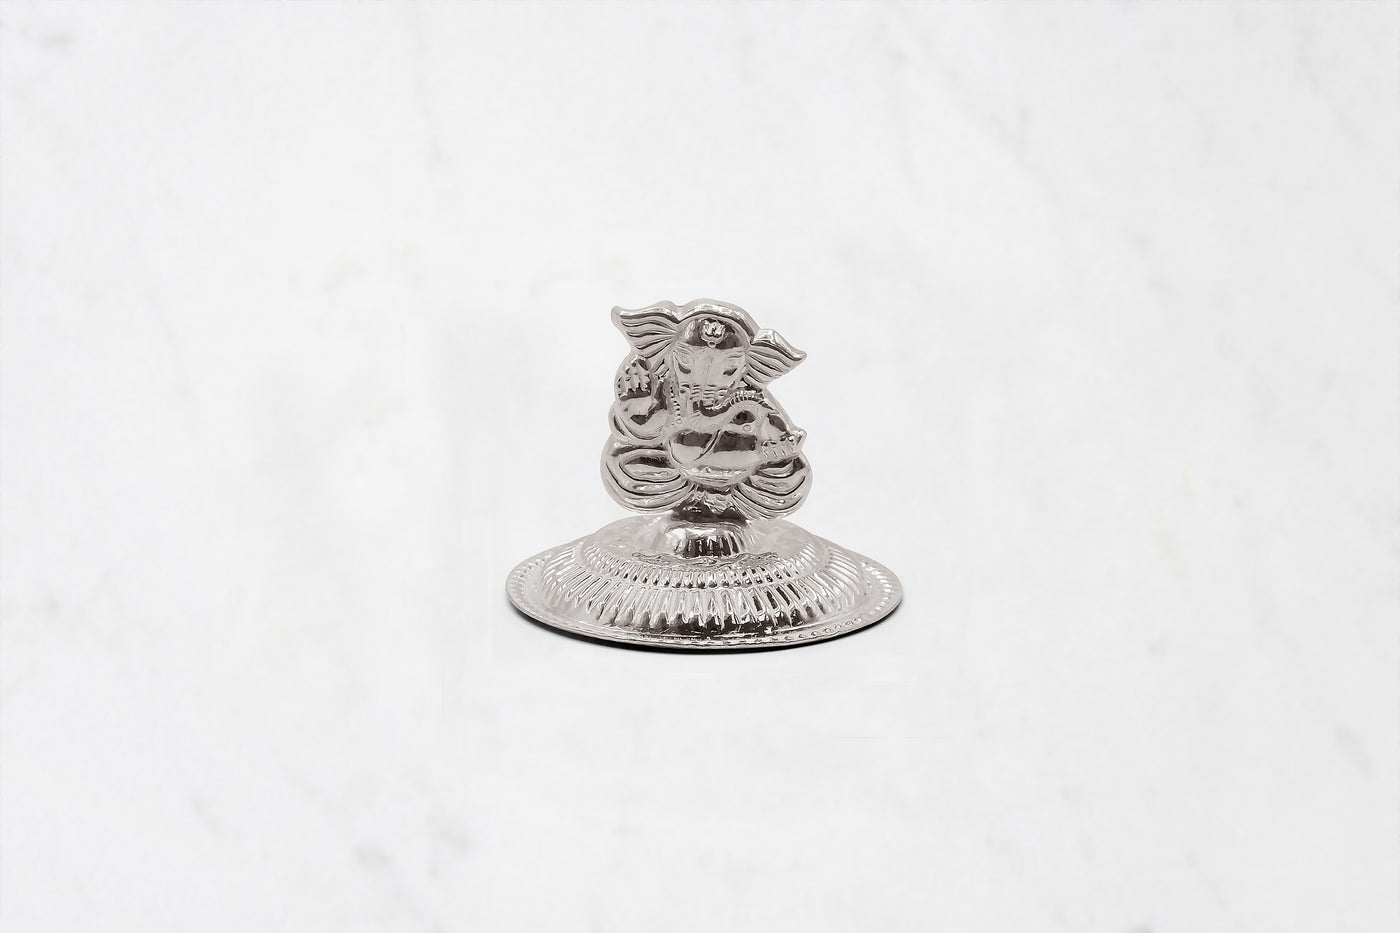 Pure silver ganesh agarbatti incense holder